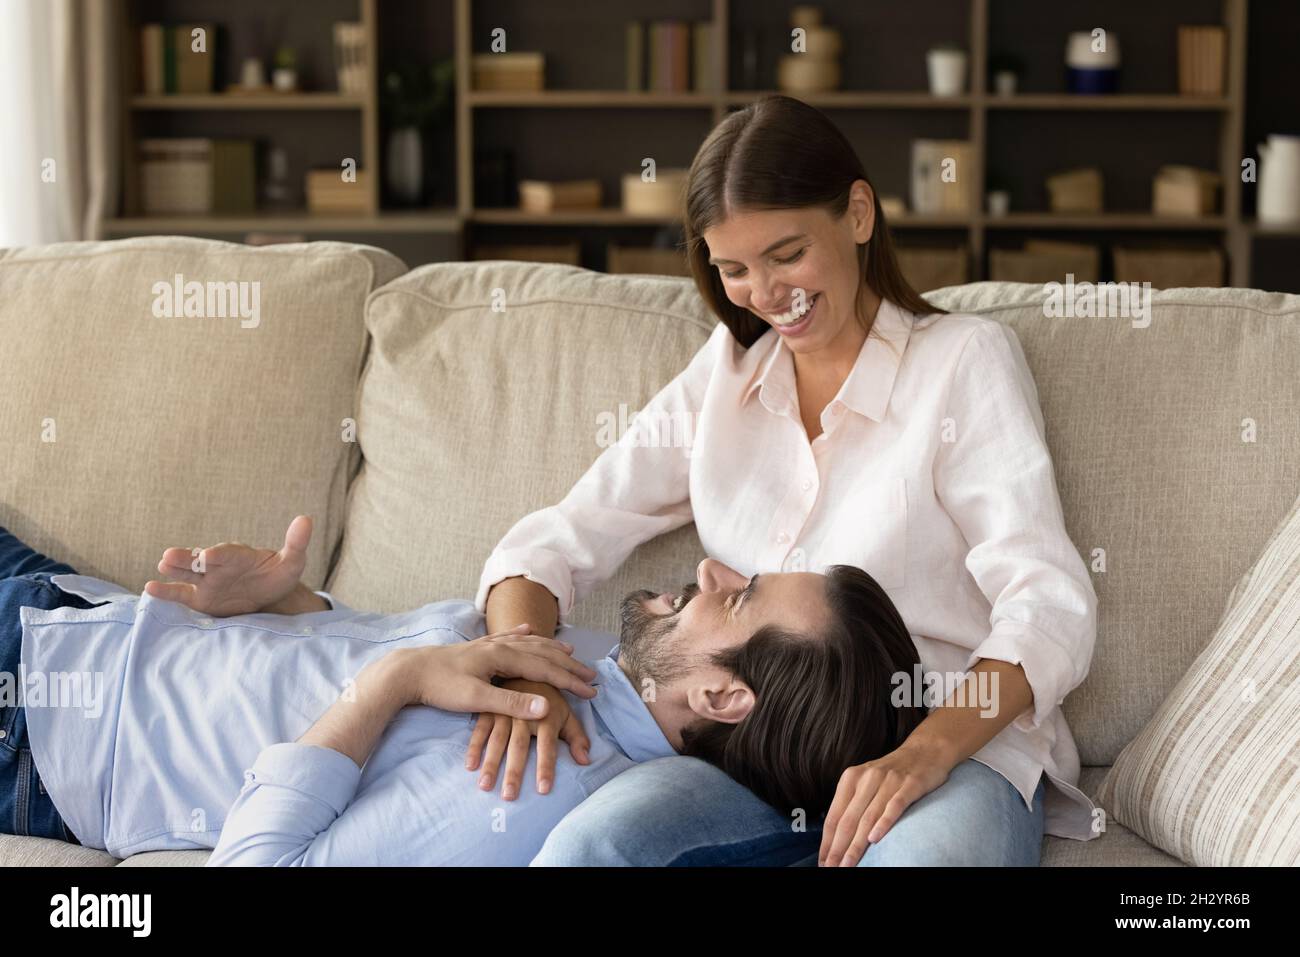 Glücklicher junger Mann, der sich mit einer liebevollen Frau auf dem Sofa ausruht. Stockfoto